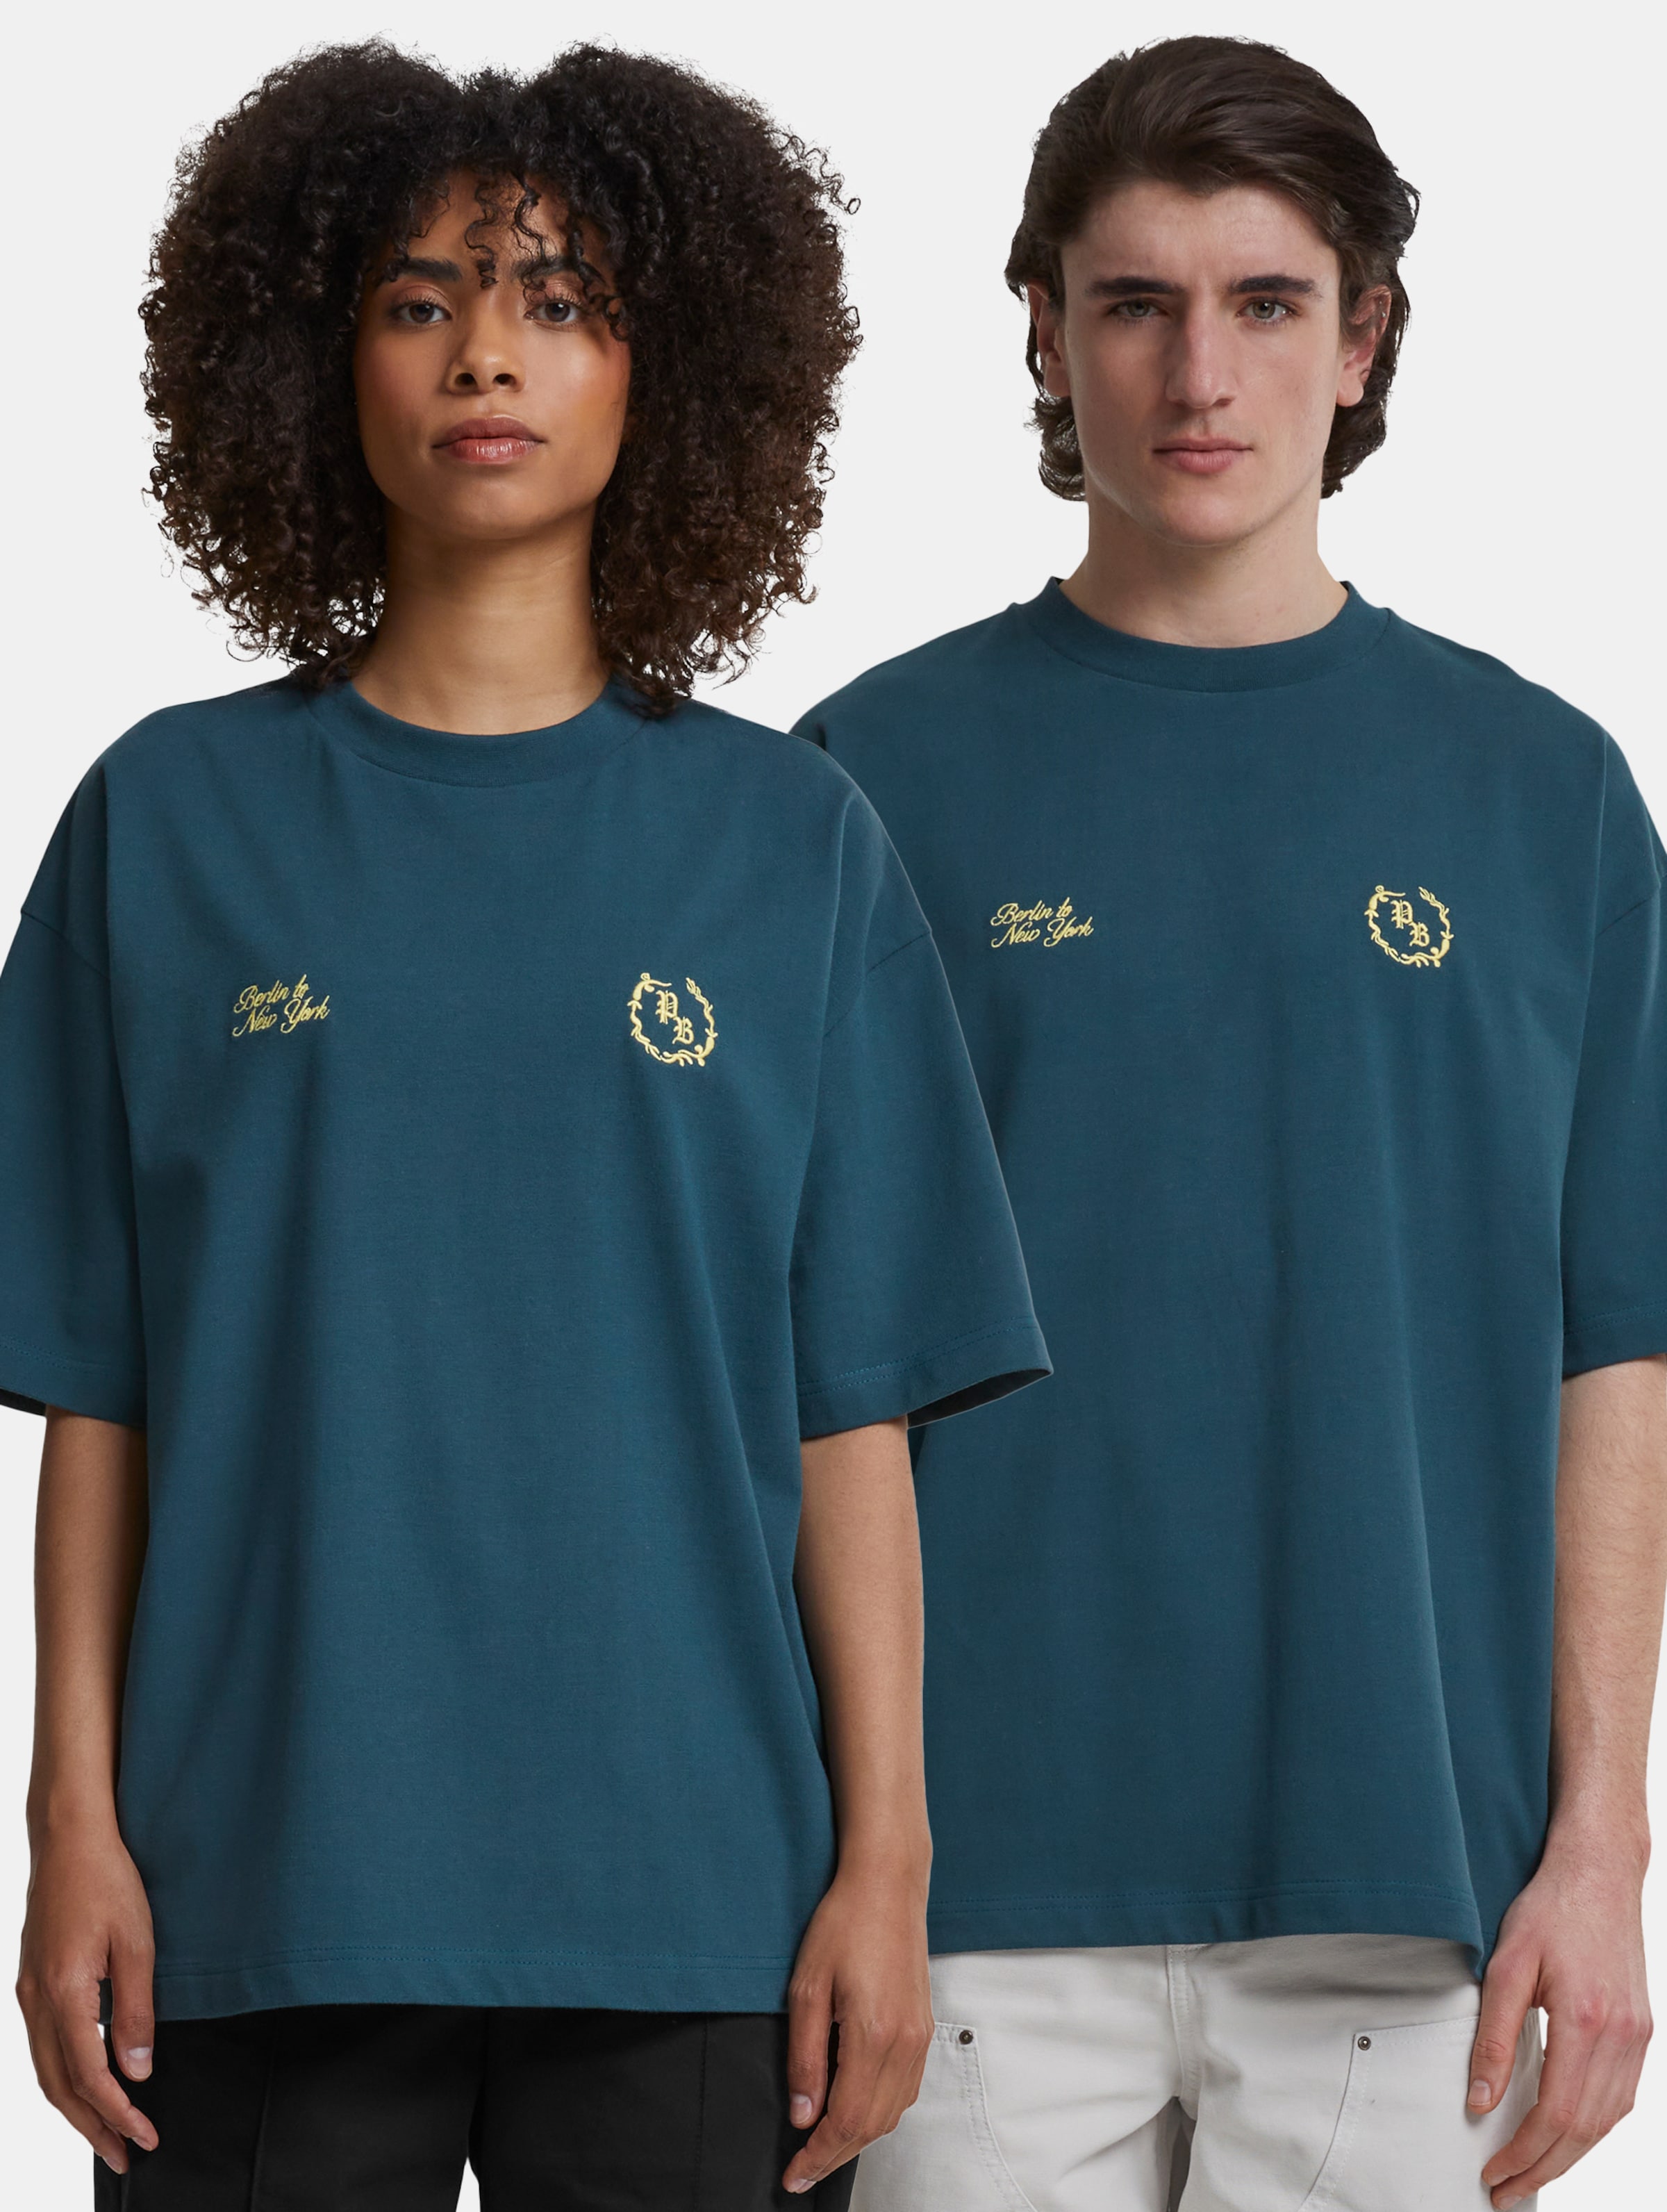 Prohibited Logo T Shirt Frauen,Männer,Unisex op kleur groen, Maat L